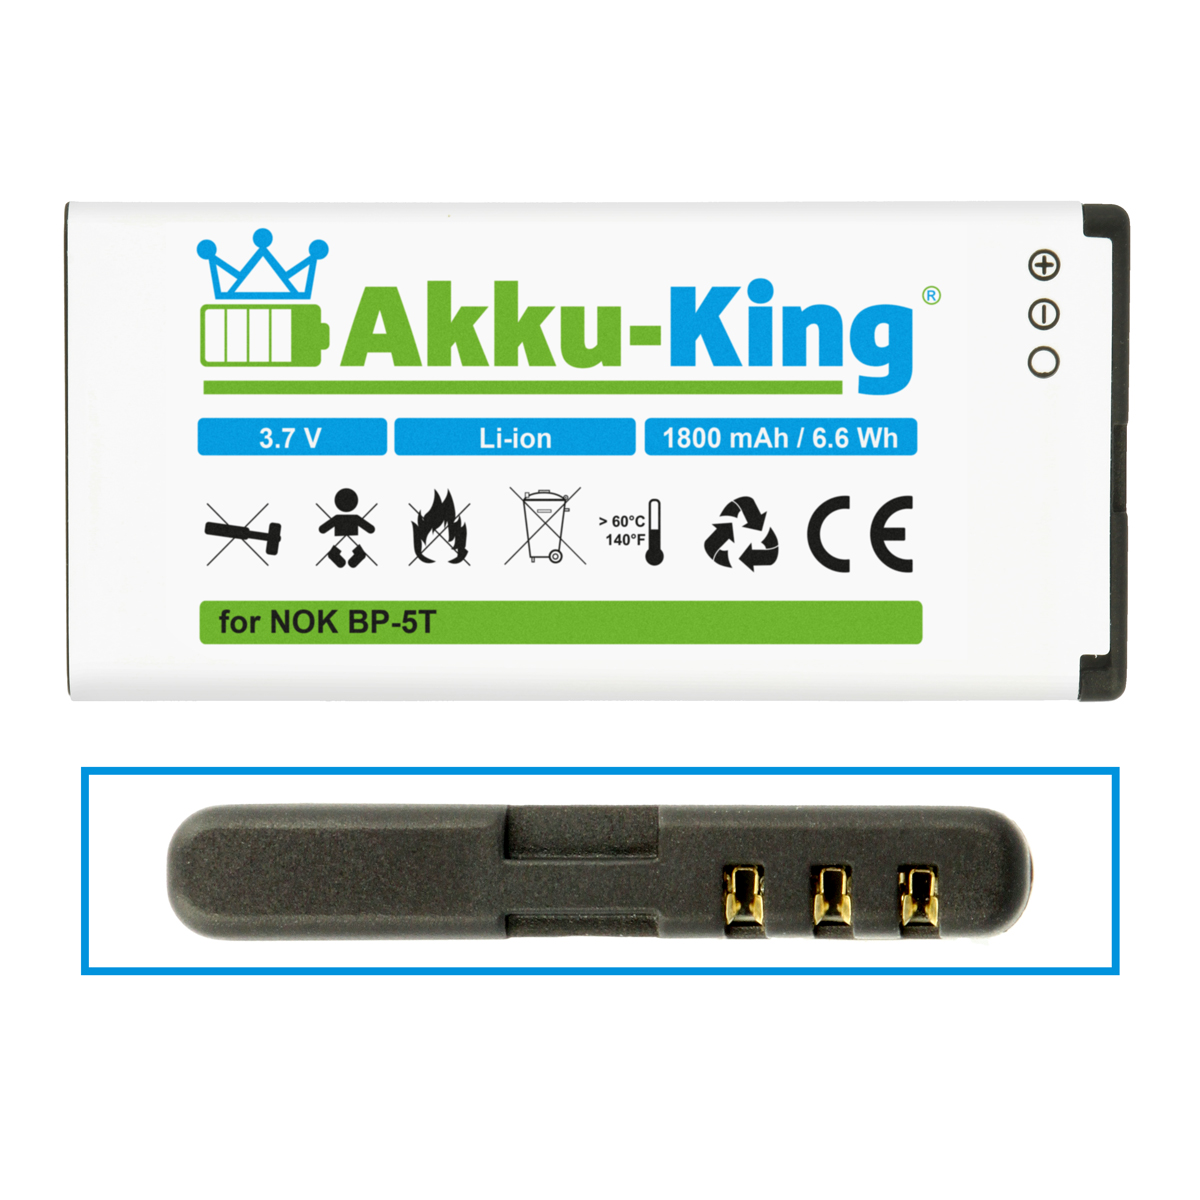 AKKU-KING Akku 1800mAh Li-Ion Handy-Akku, Nokia BP-5T mit 3.7 kompatibel Volt